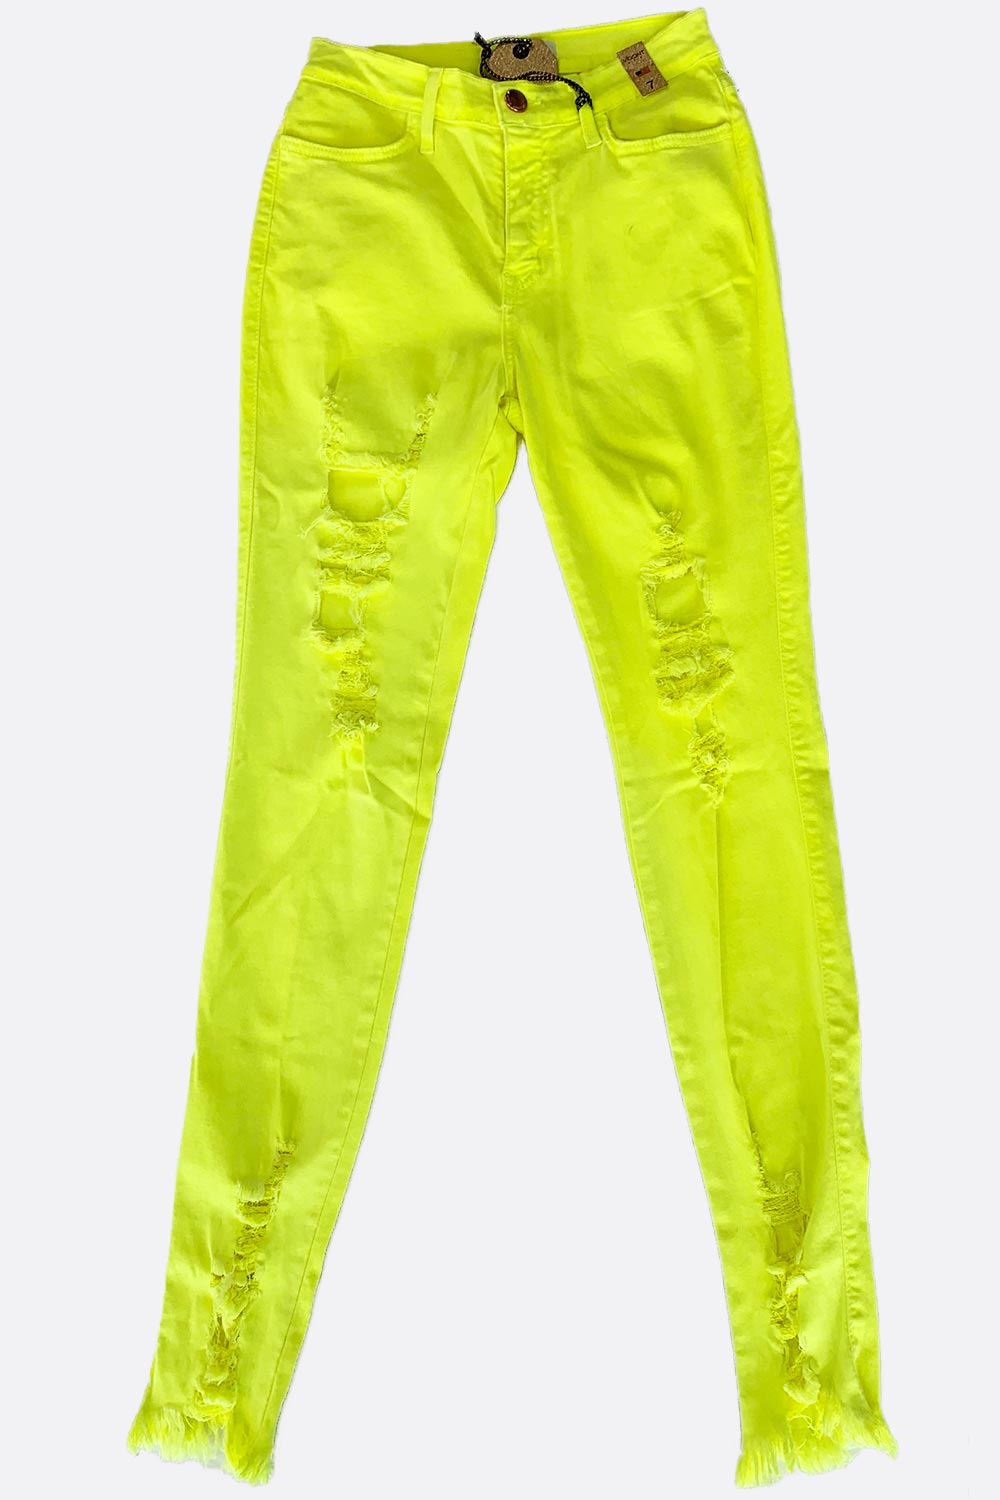 Vibrant Neon Jeans | D'Nona Shop Boutique